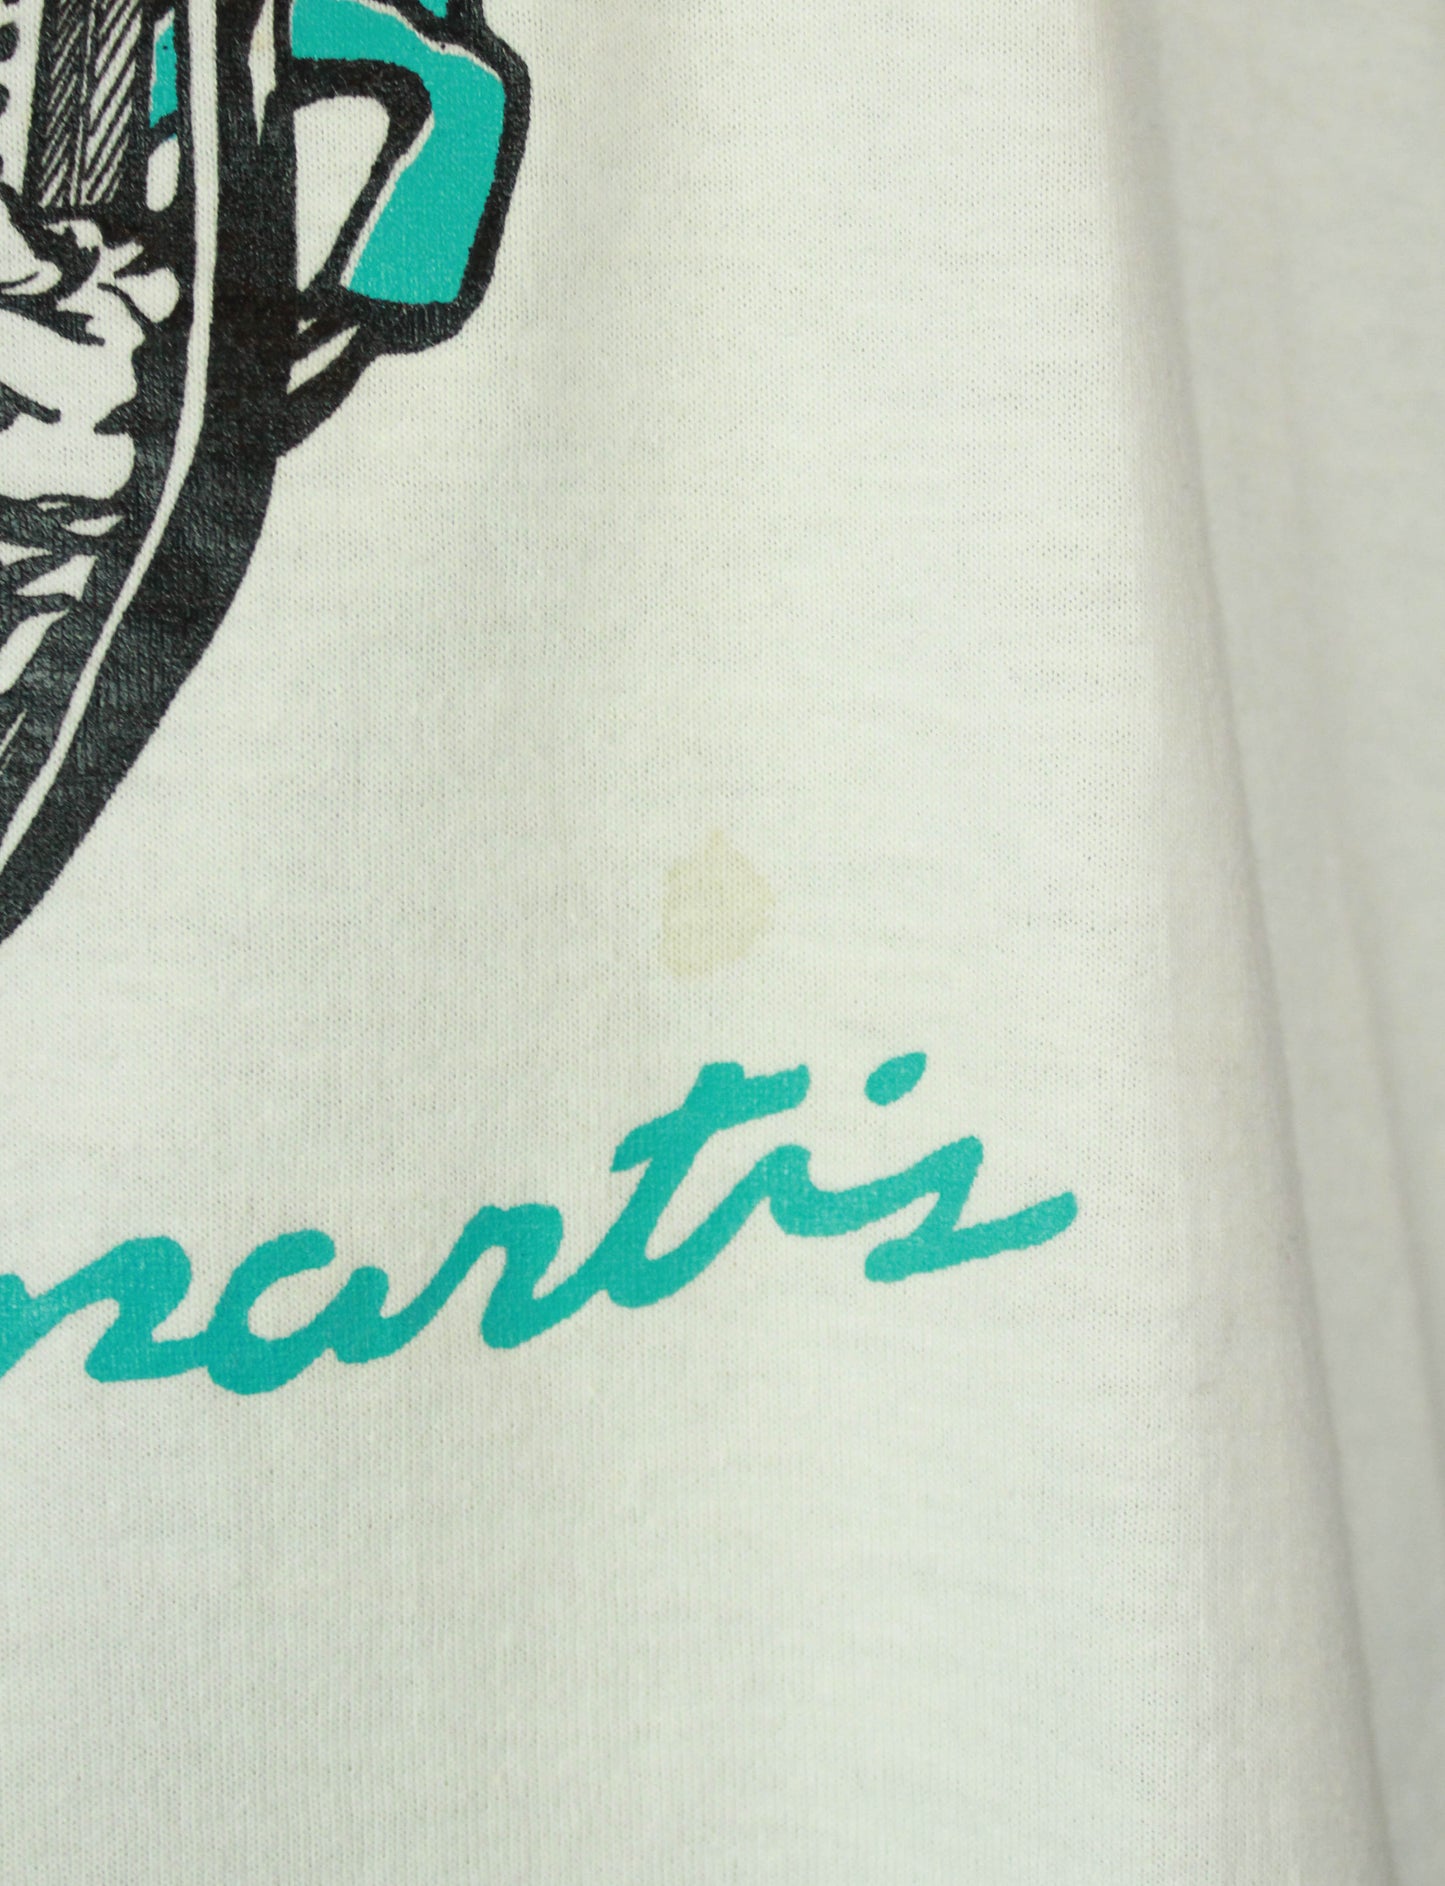 Vintage Buckwheat Zydeco Concert T Shirt 80's Ils Sont Partis - XL